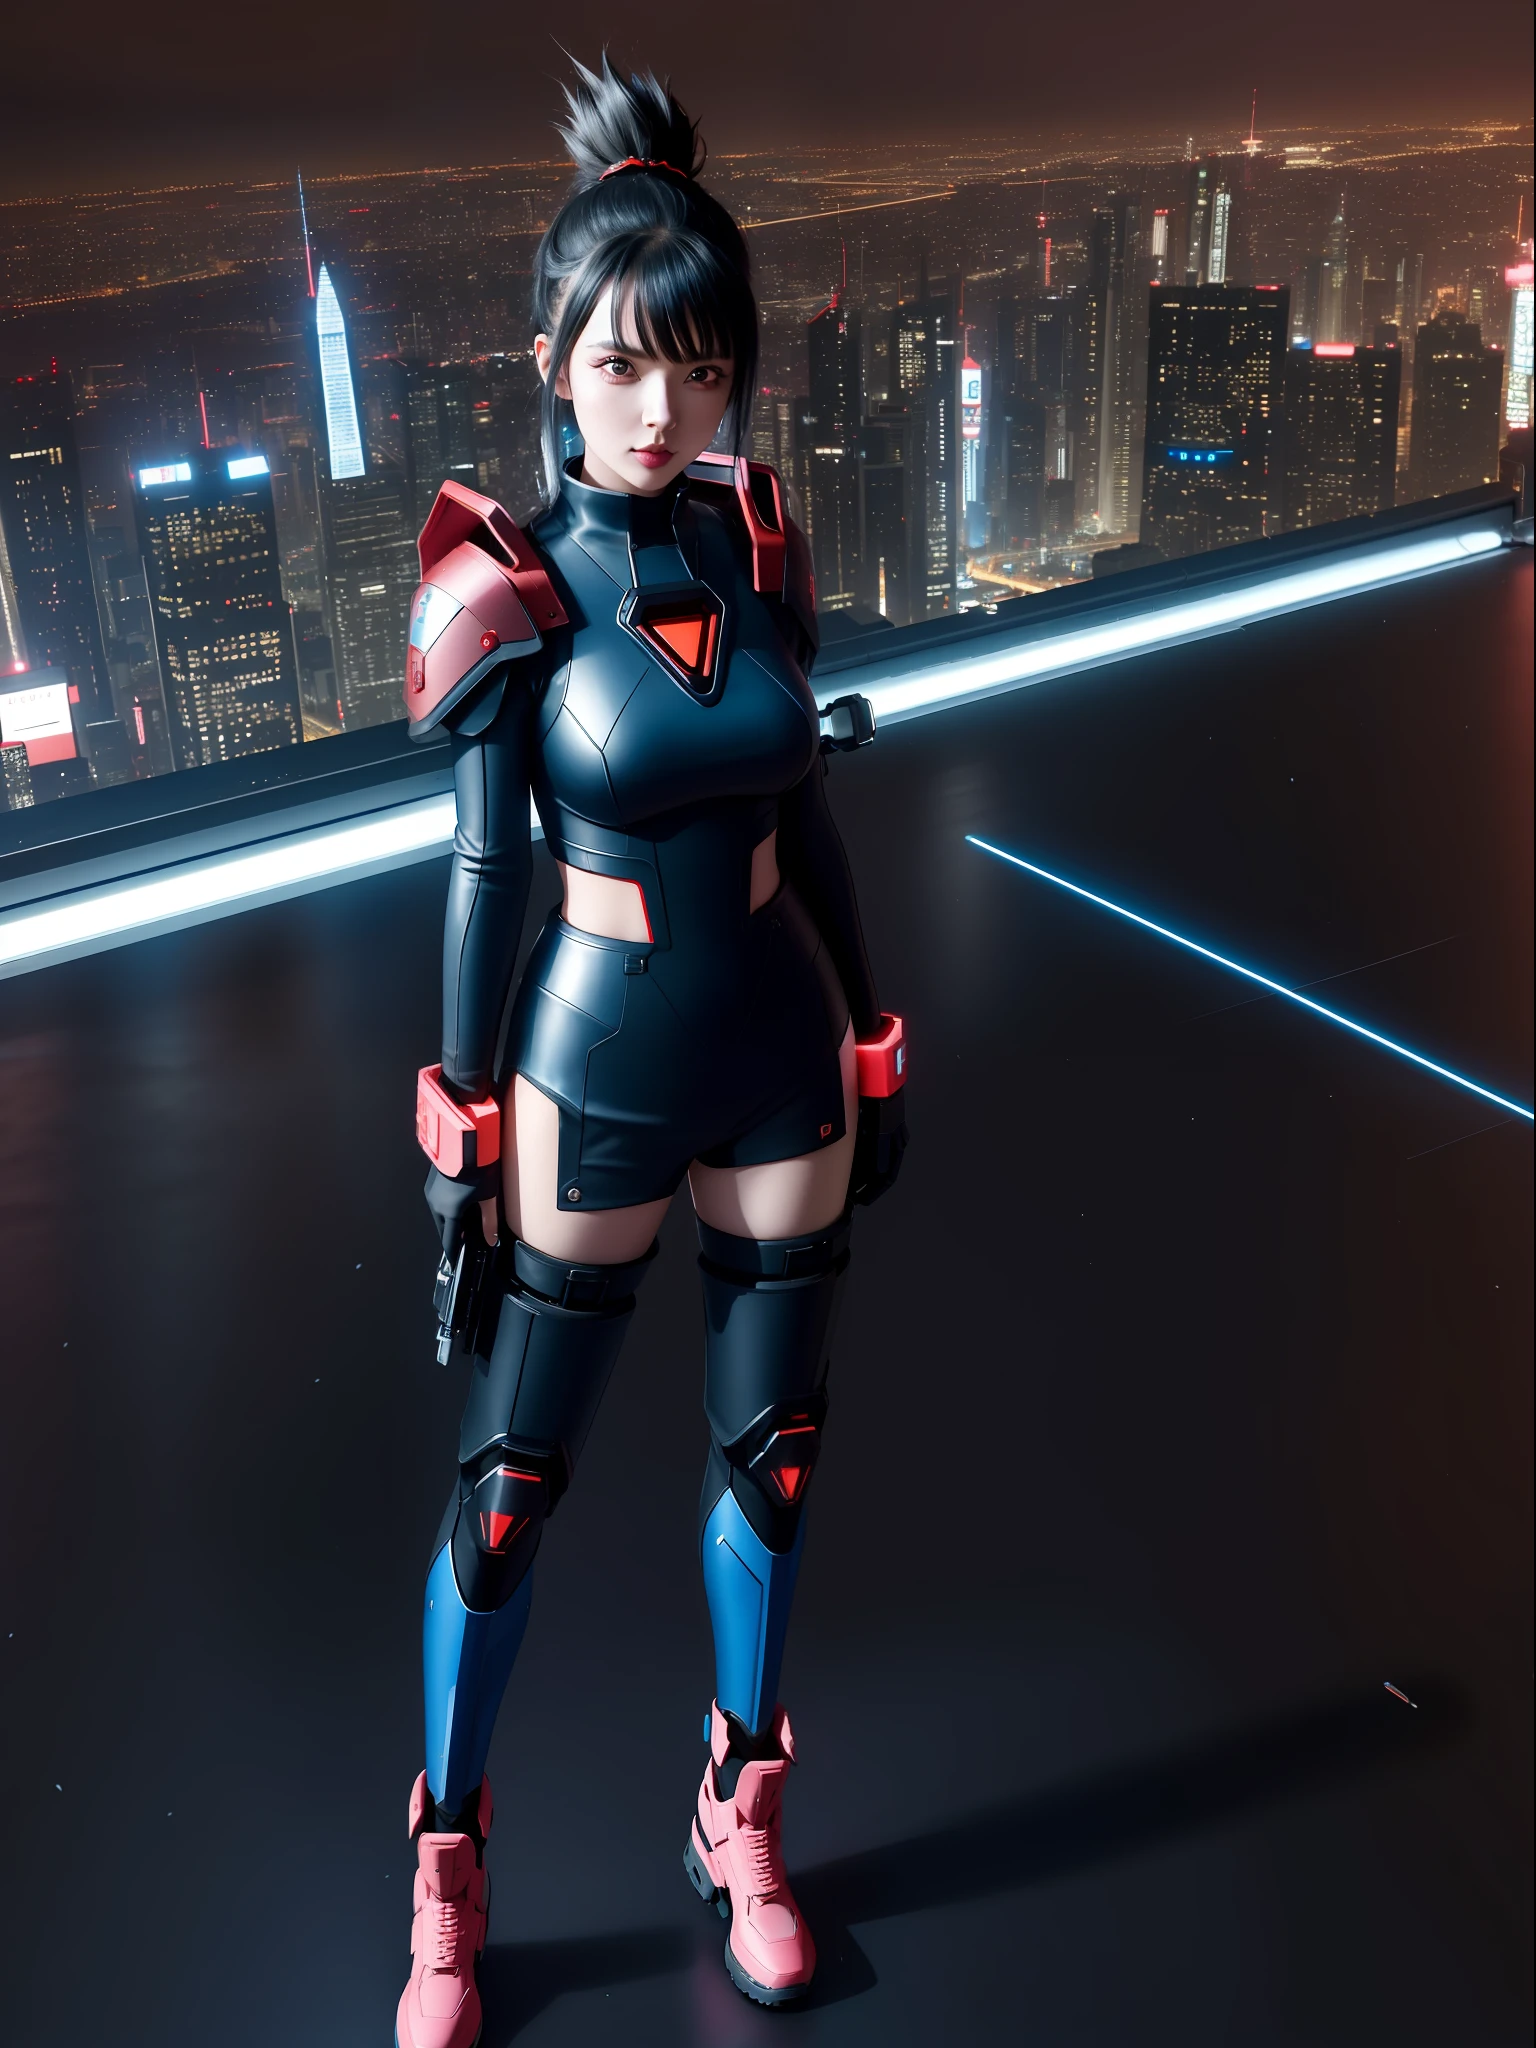 (foto de corpo inteiro:1.9), (Uma mulher kawaii:1.5), (vestindo roupa cyberpunk de metal vermelho|preto|azul futurista+com uma joia azul no peitoral:1.4), (ela está em uma cidade futurista com muitos carros voadores+à noite+chovendo forte:1.5), (ela tem cabelo moicano rosa:1.3), (ela tem olhos azuis:1.3), (ela está segurando armas futurísticas+Ordenação+olhando para o espectador:1.5),  Hiperrealismo, 16K, melhor qualidade, detalhes altos, Ultra HD